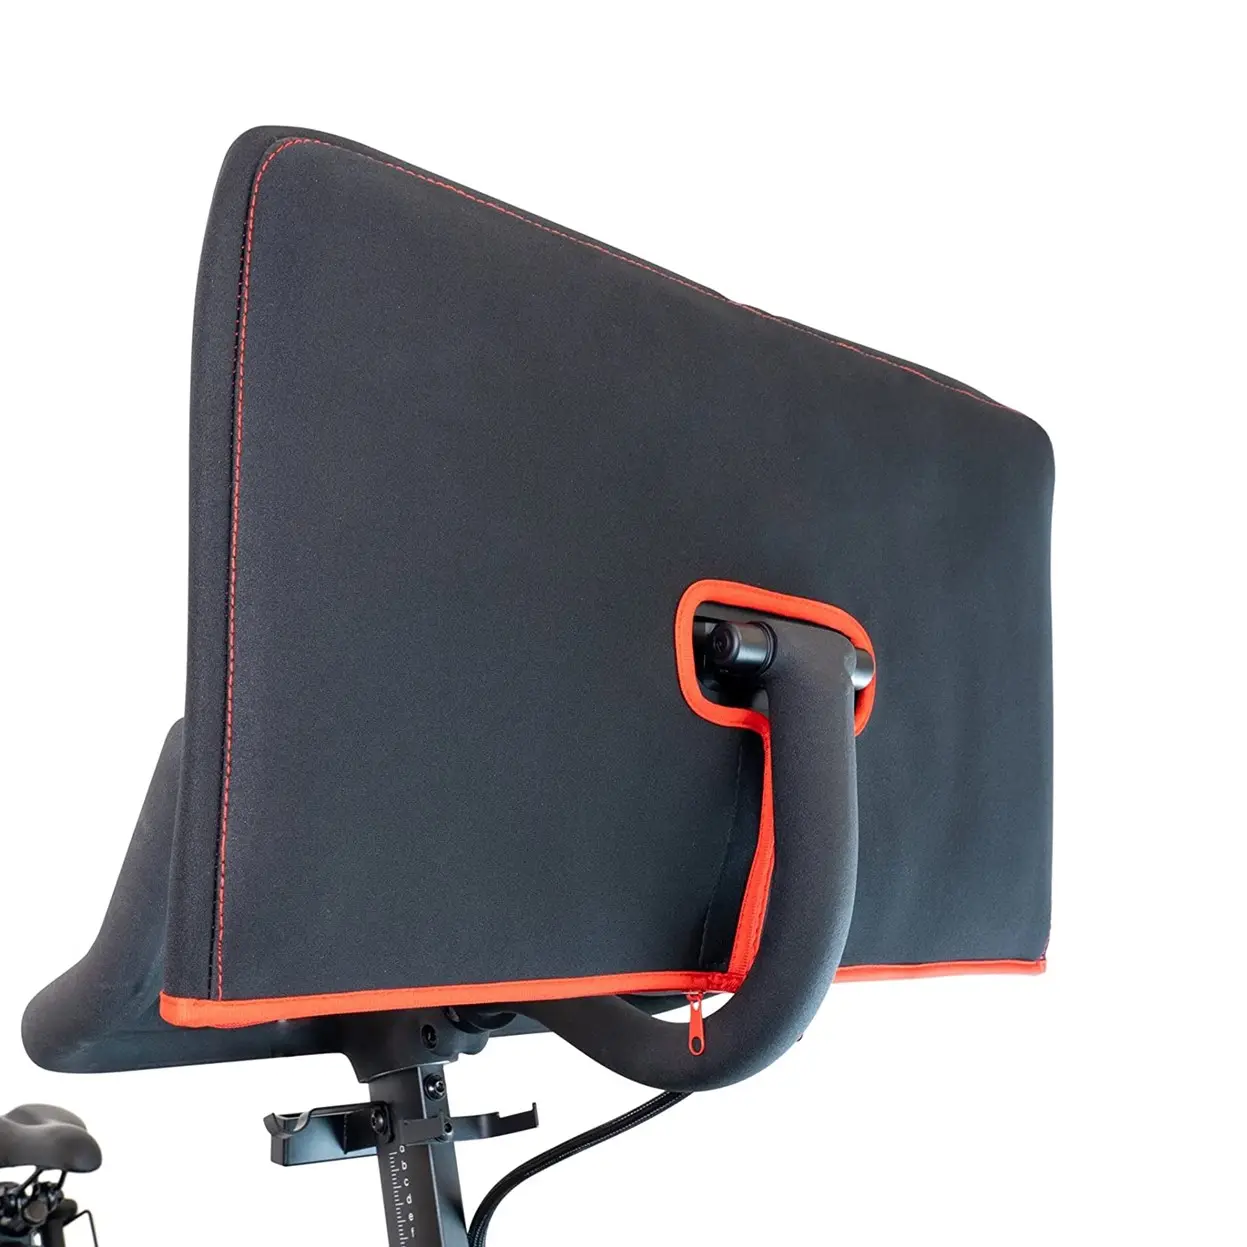 OEM Amazon Venta caliente Protector de pantalla Monitor de neopreno Cubierta de la pantalla para la bicicleta de ejercicio